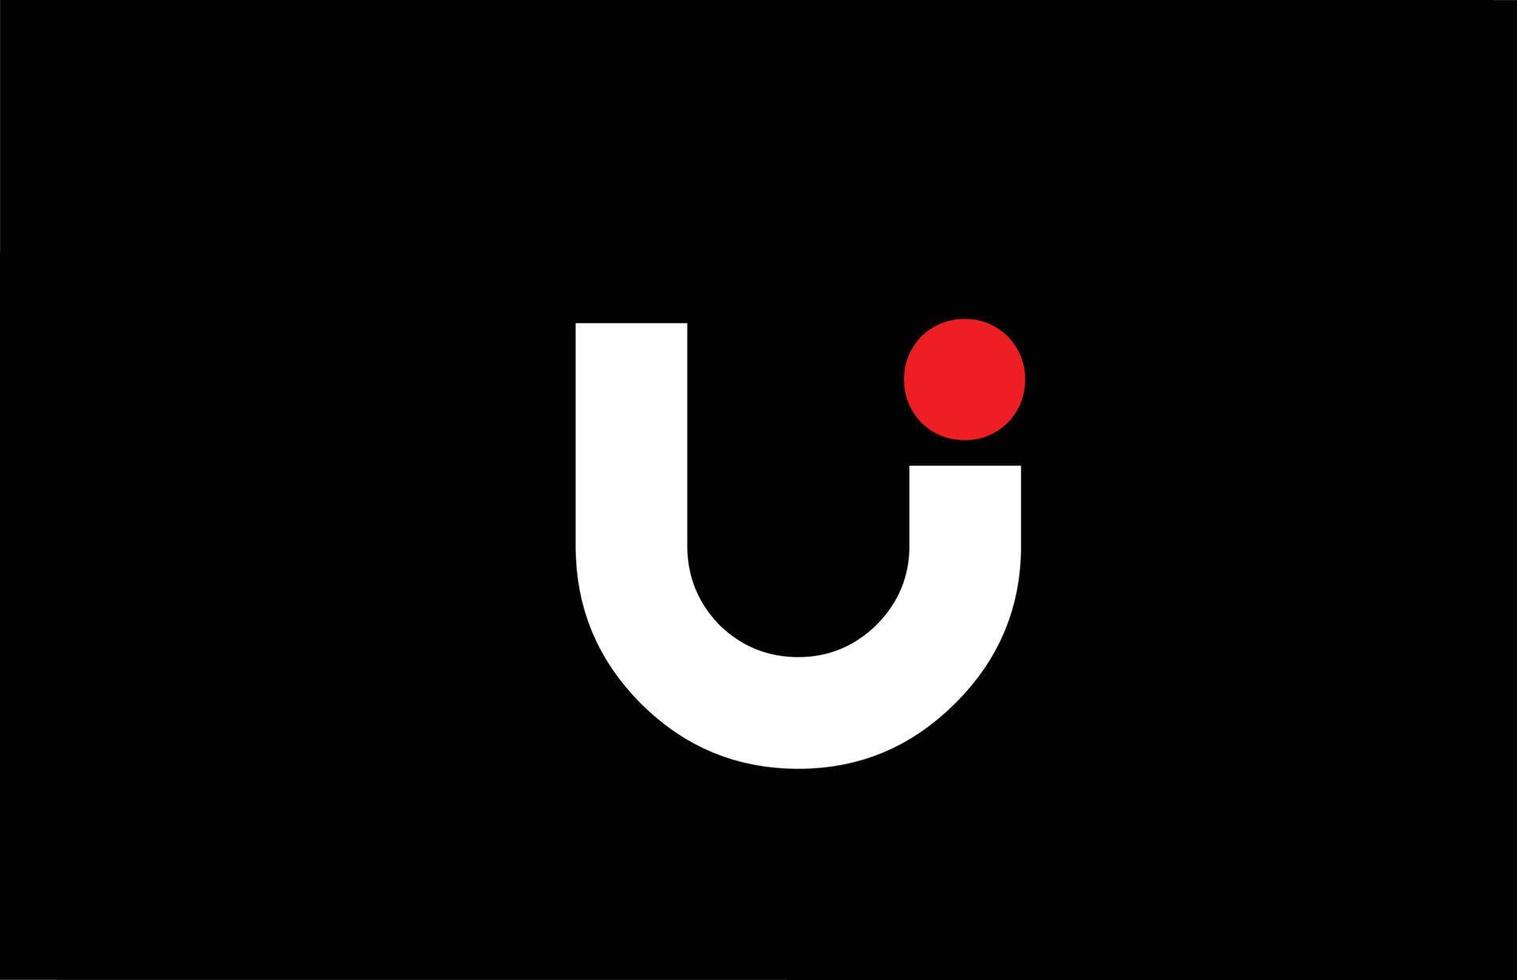 Diseño del logotipo del icono de la letra del alfabeto u. plantilla creativa para empresas y negocios con punto rojo en blanco y negro vector